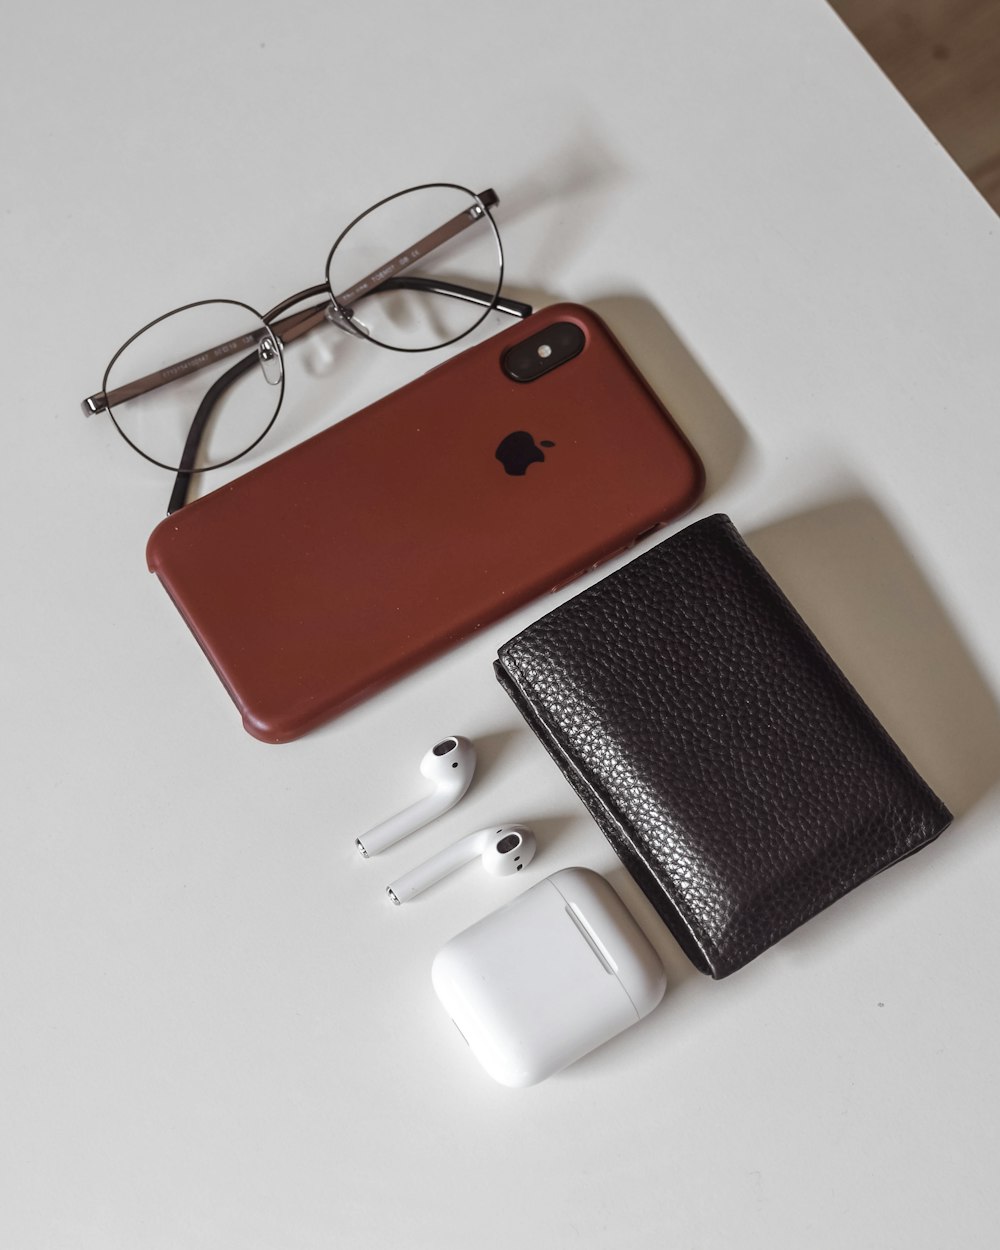 빨간색과 검은 색 iPhone 케이스 옆에 흰색 가죽 지갑